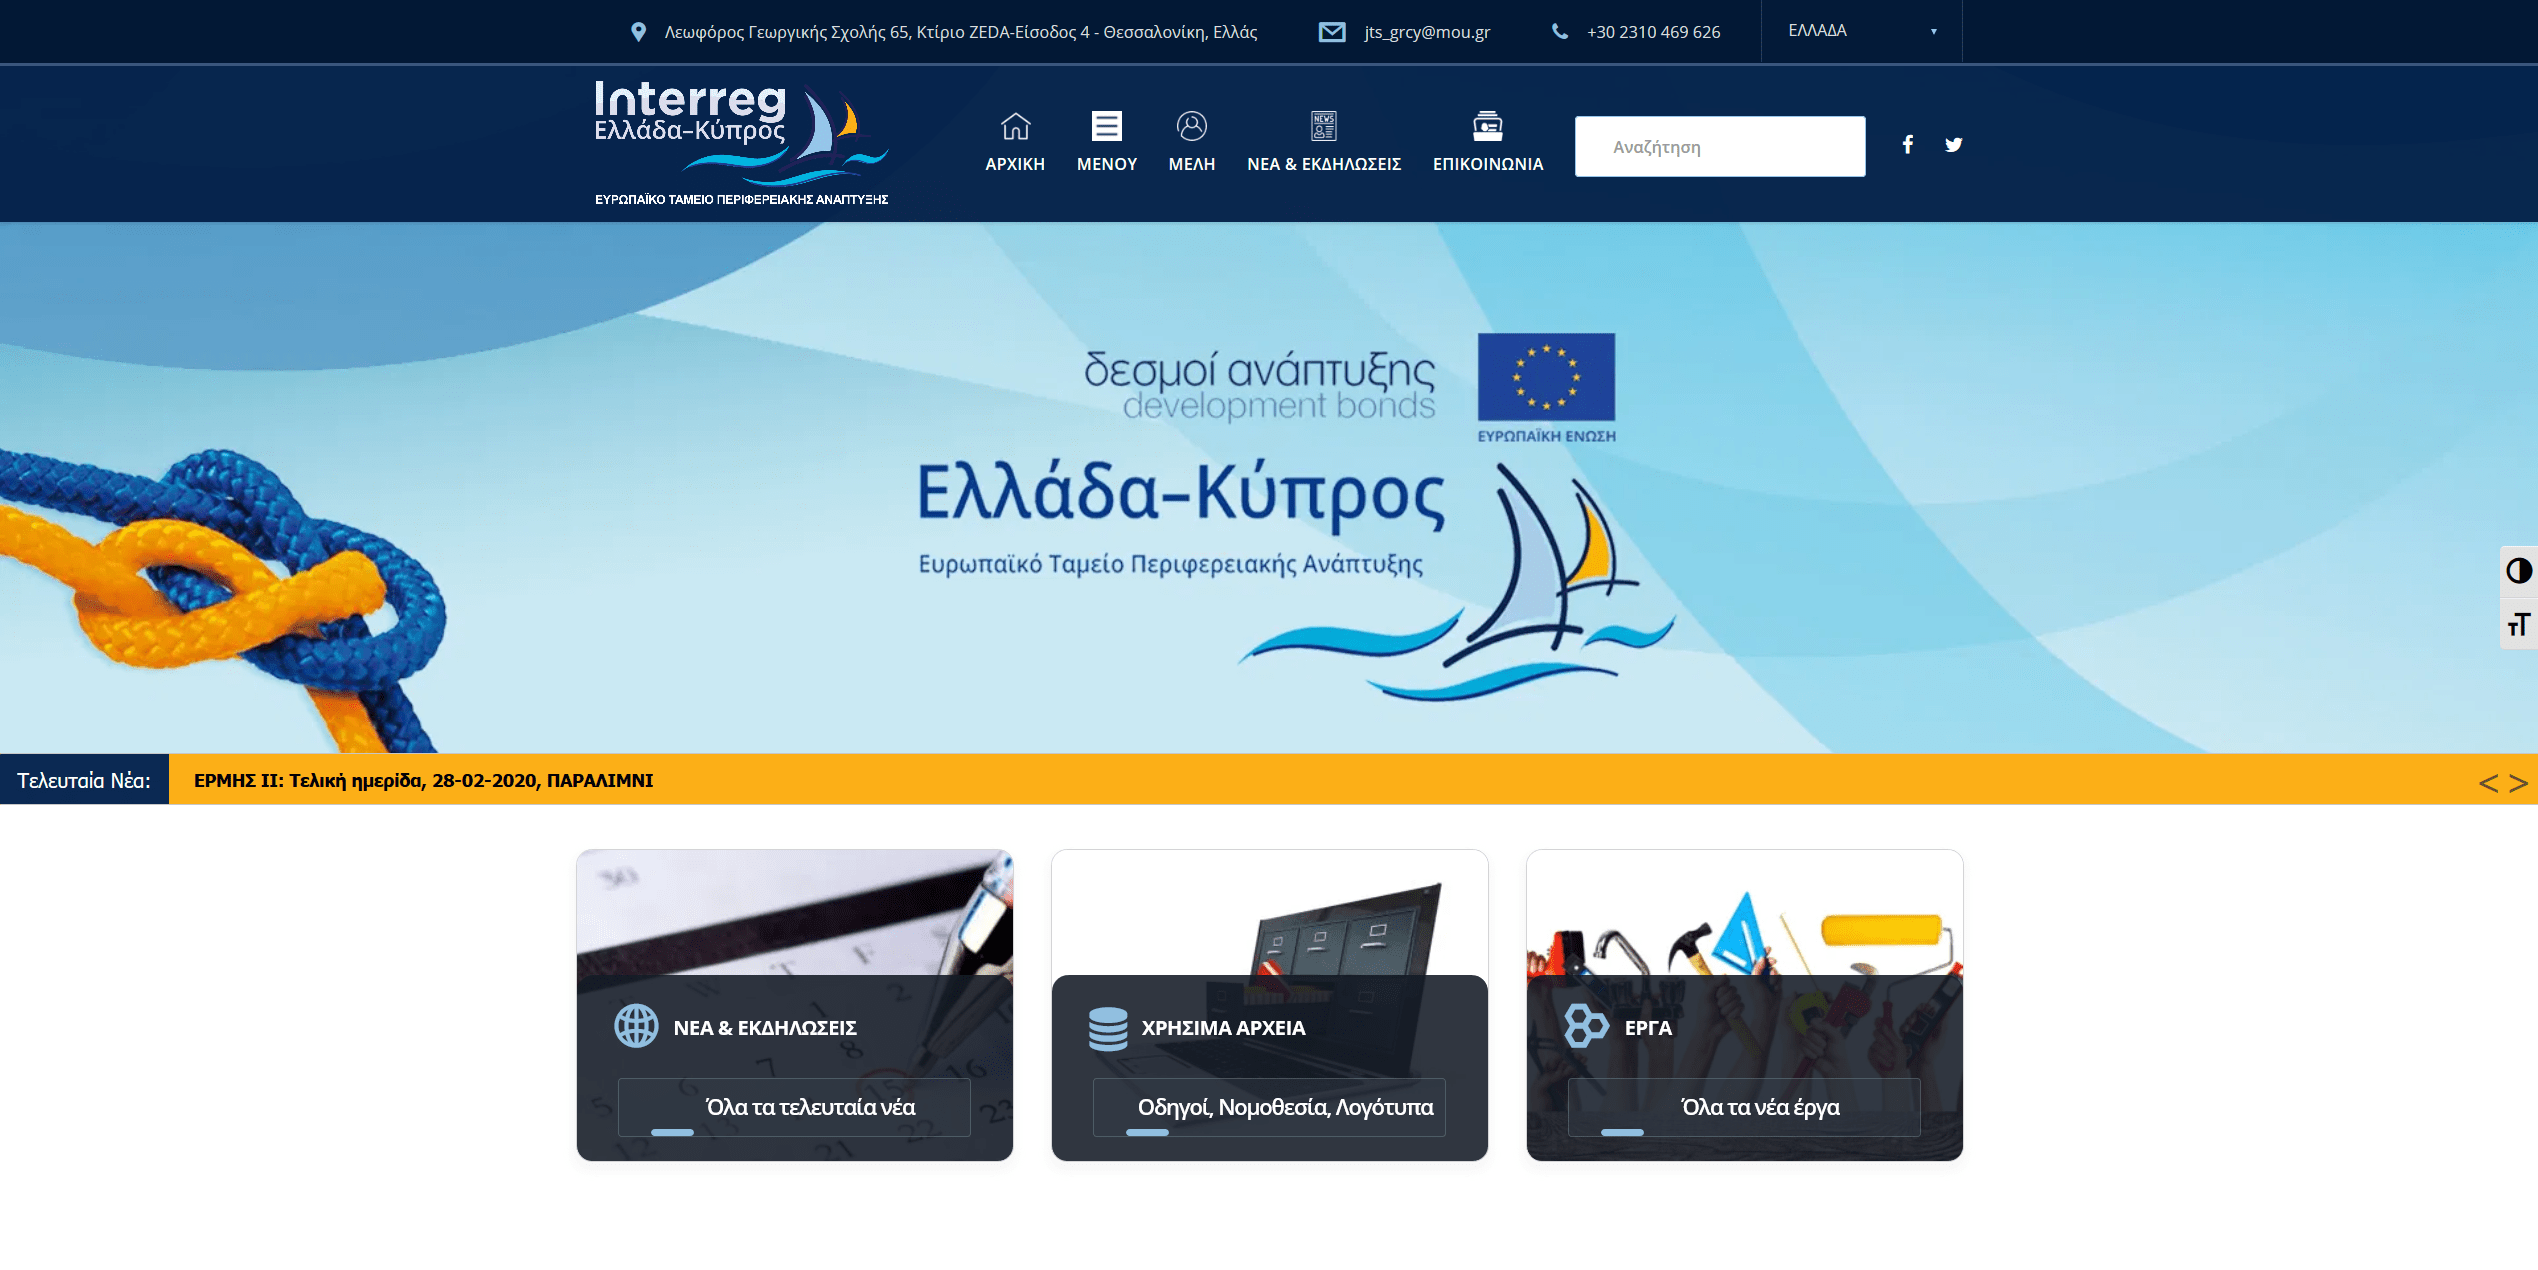 Screenshot 2020 03 18 Ελλάδα Κύπρος Ευρωπαϊκό ταμείο περιφερειακής ανάπτυξης